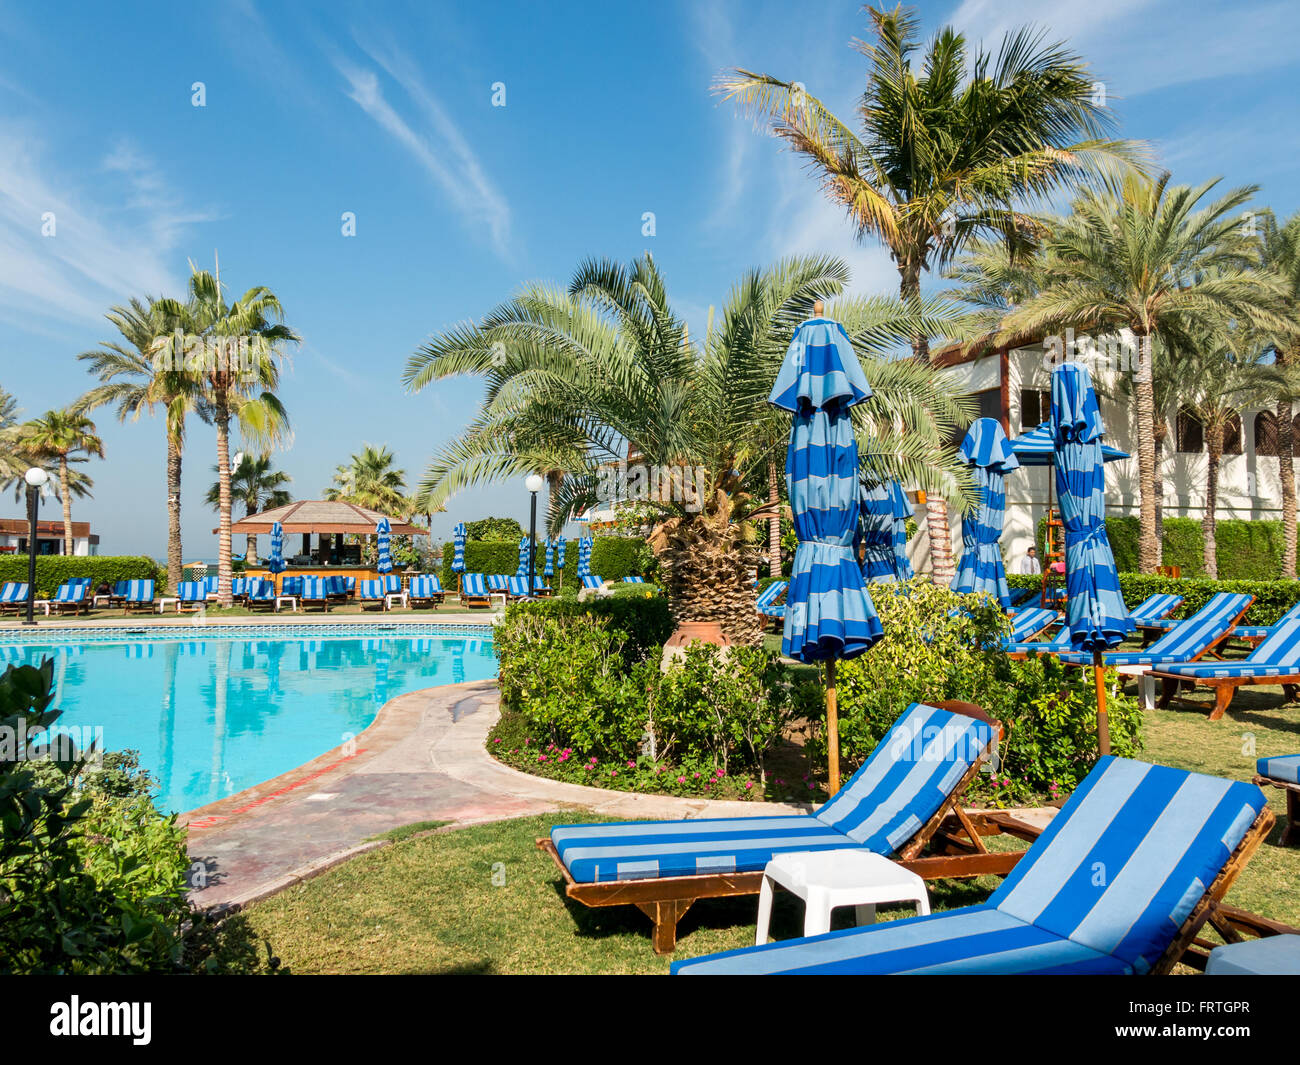 Lettini, palme e piscina nel giardino tropicale di lusso hotel beach resort in Dubai Emirati Arabi Uniti Foto Stock